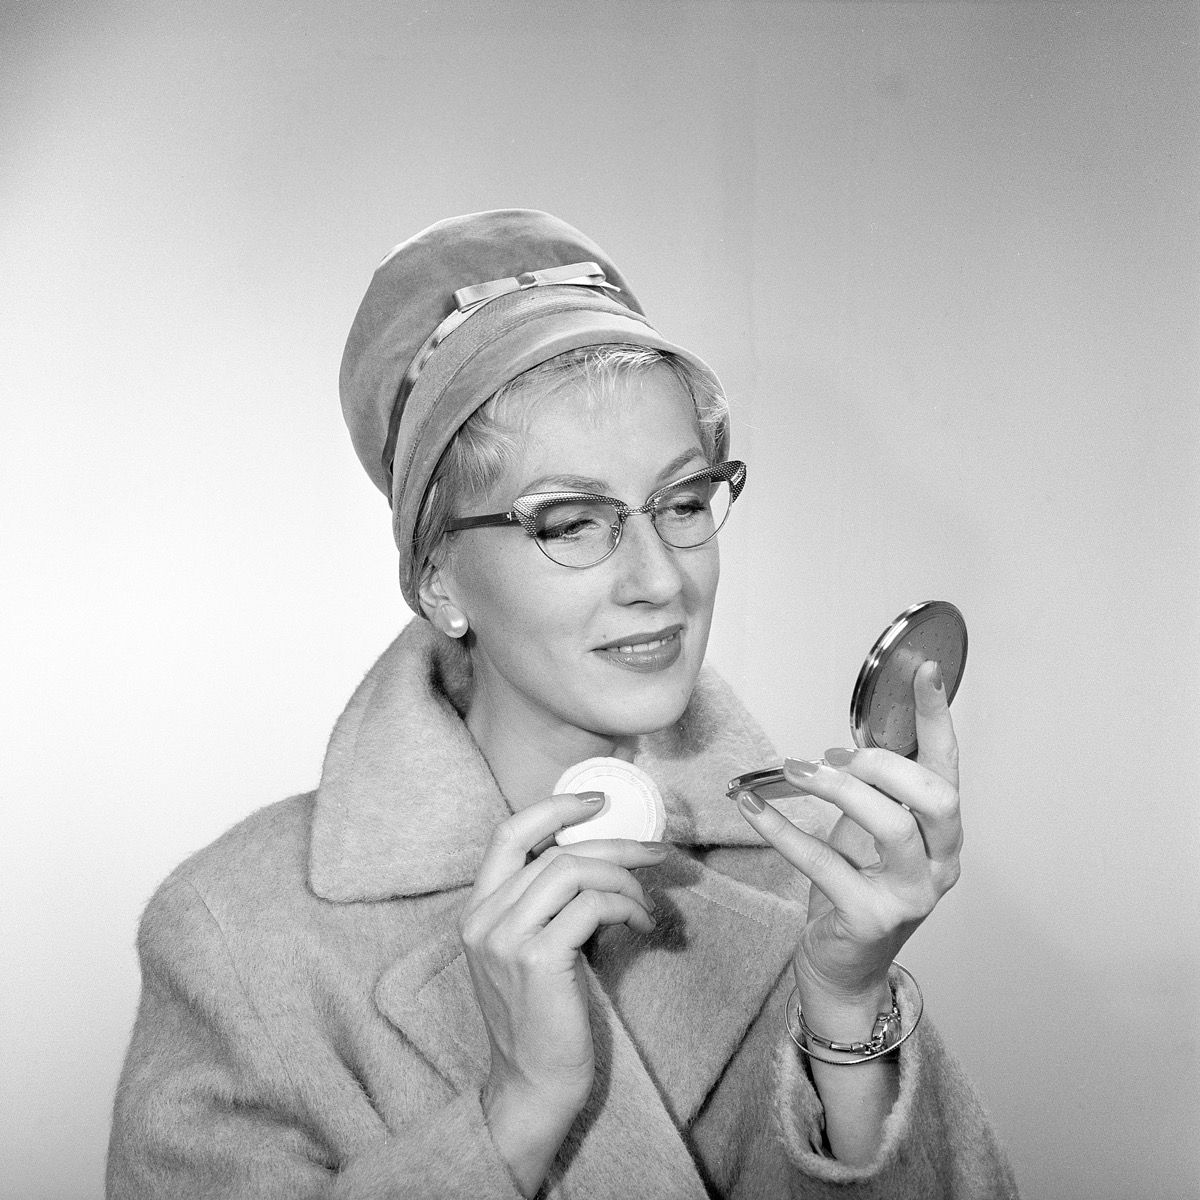 איפור שנות החמישים. אישה צעירה מסתכלת על עצמה במראת הכיס ומשפרת את האיפור שלה. היא חובשת כובע אופנתי, משקפי טיפוס של שנות ה -50 ומעיל. שנות החמישים